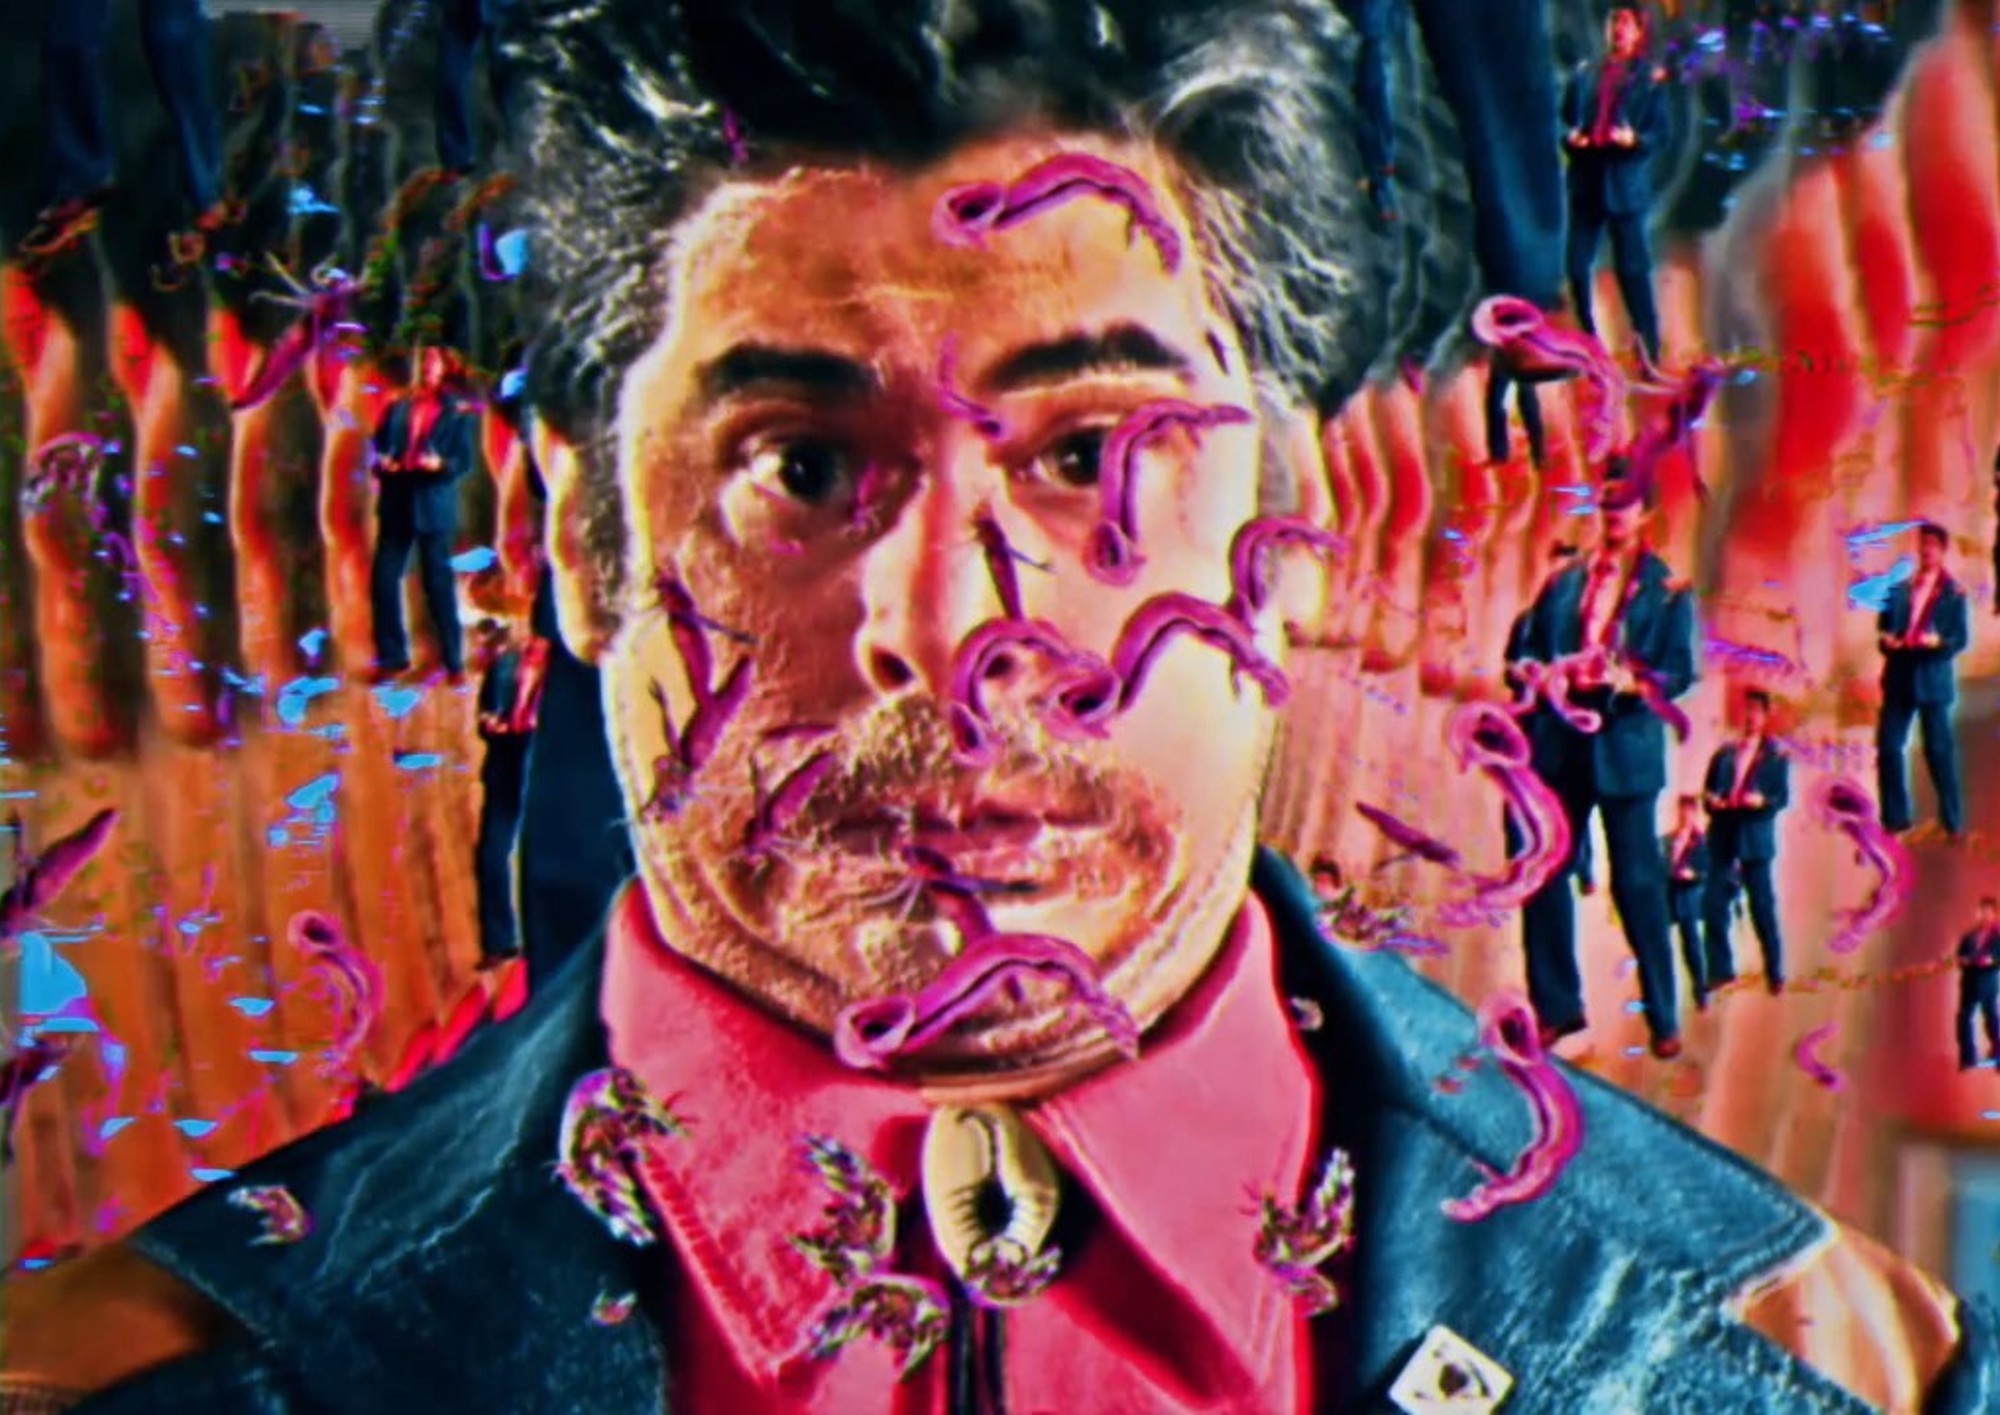 Colorful, artwork portrait of a man's face